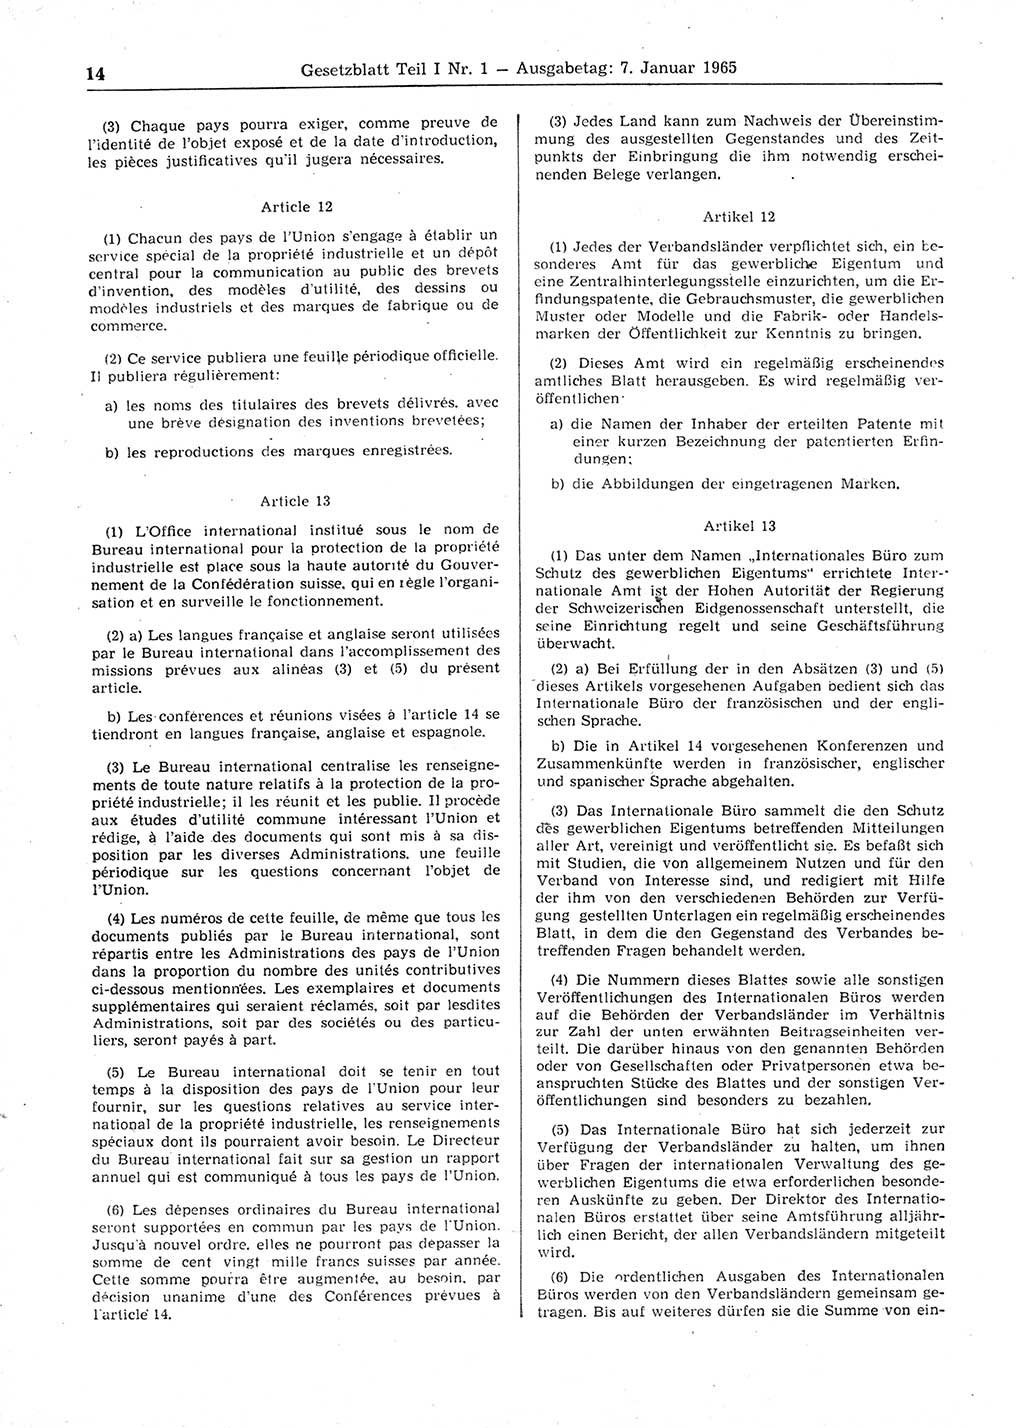 Gesetzblatt (GBl.) der Deutschen Demokratischen Republik (DDR) Teil Ⅰ 1965, Seite 14 (GBl. DDR Ⅰ 1965, S. 14)